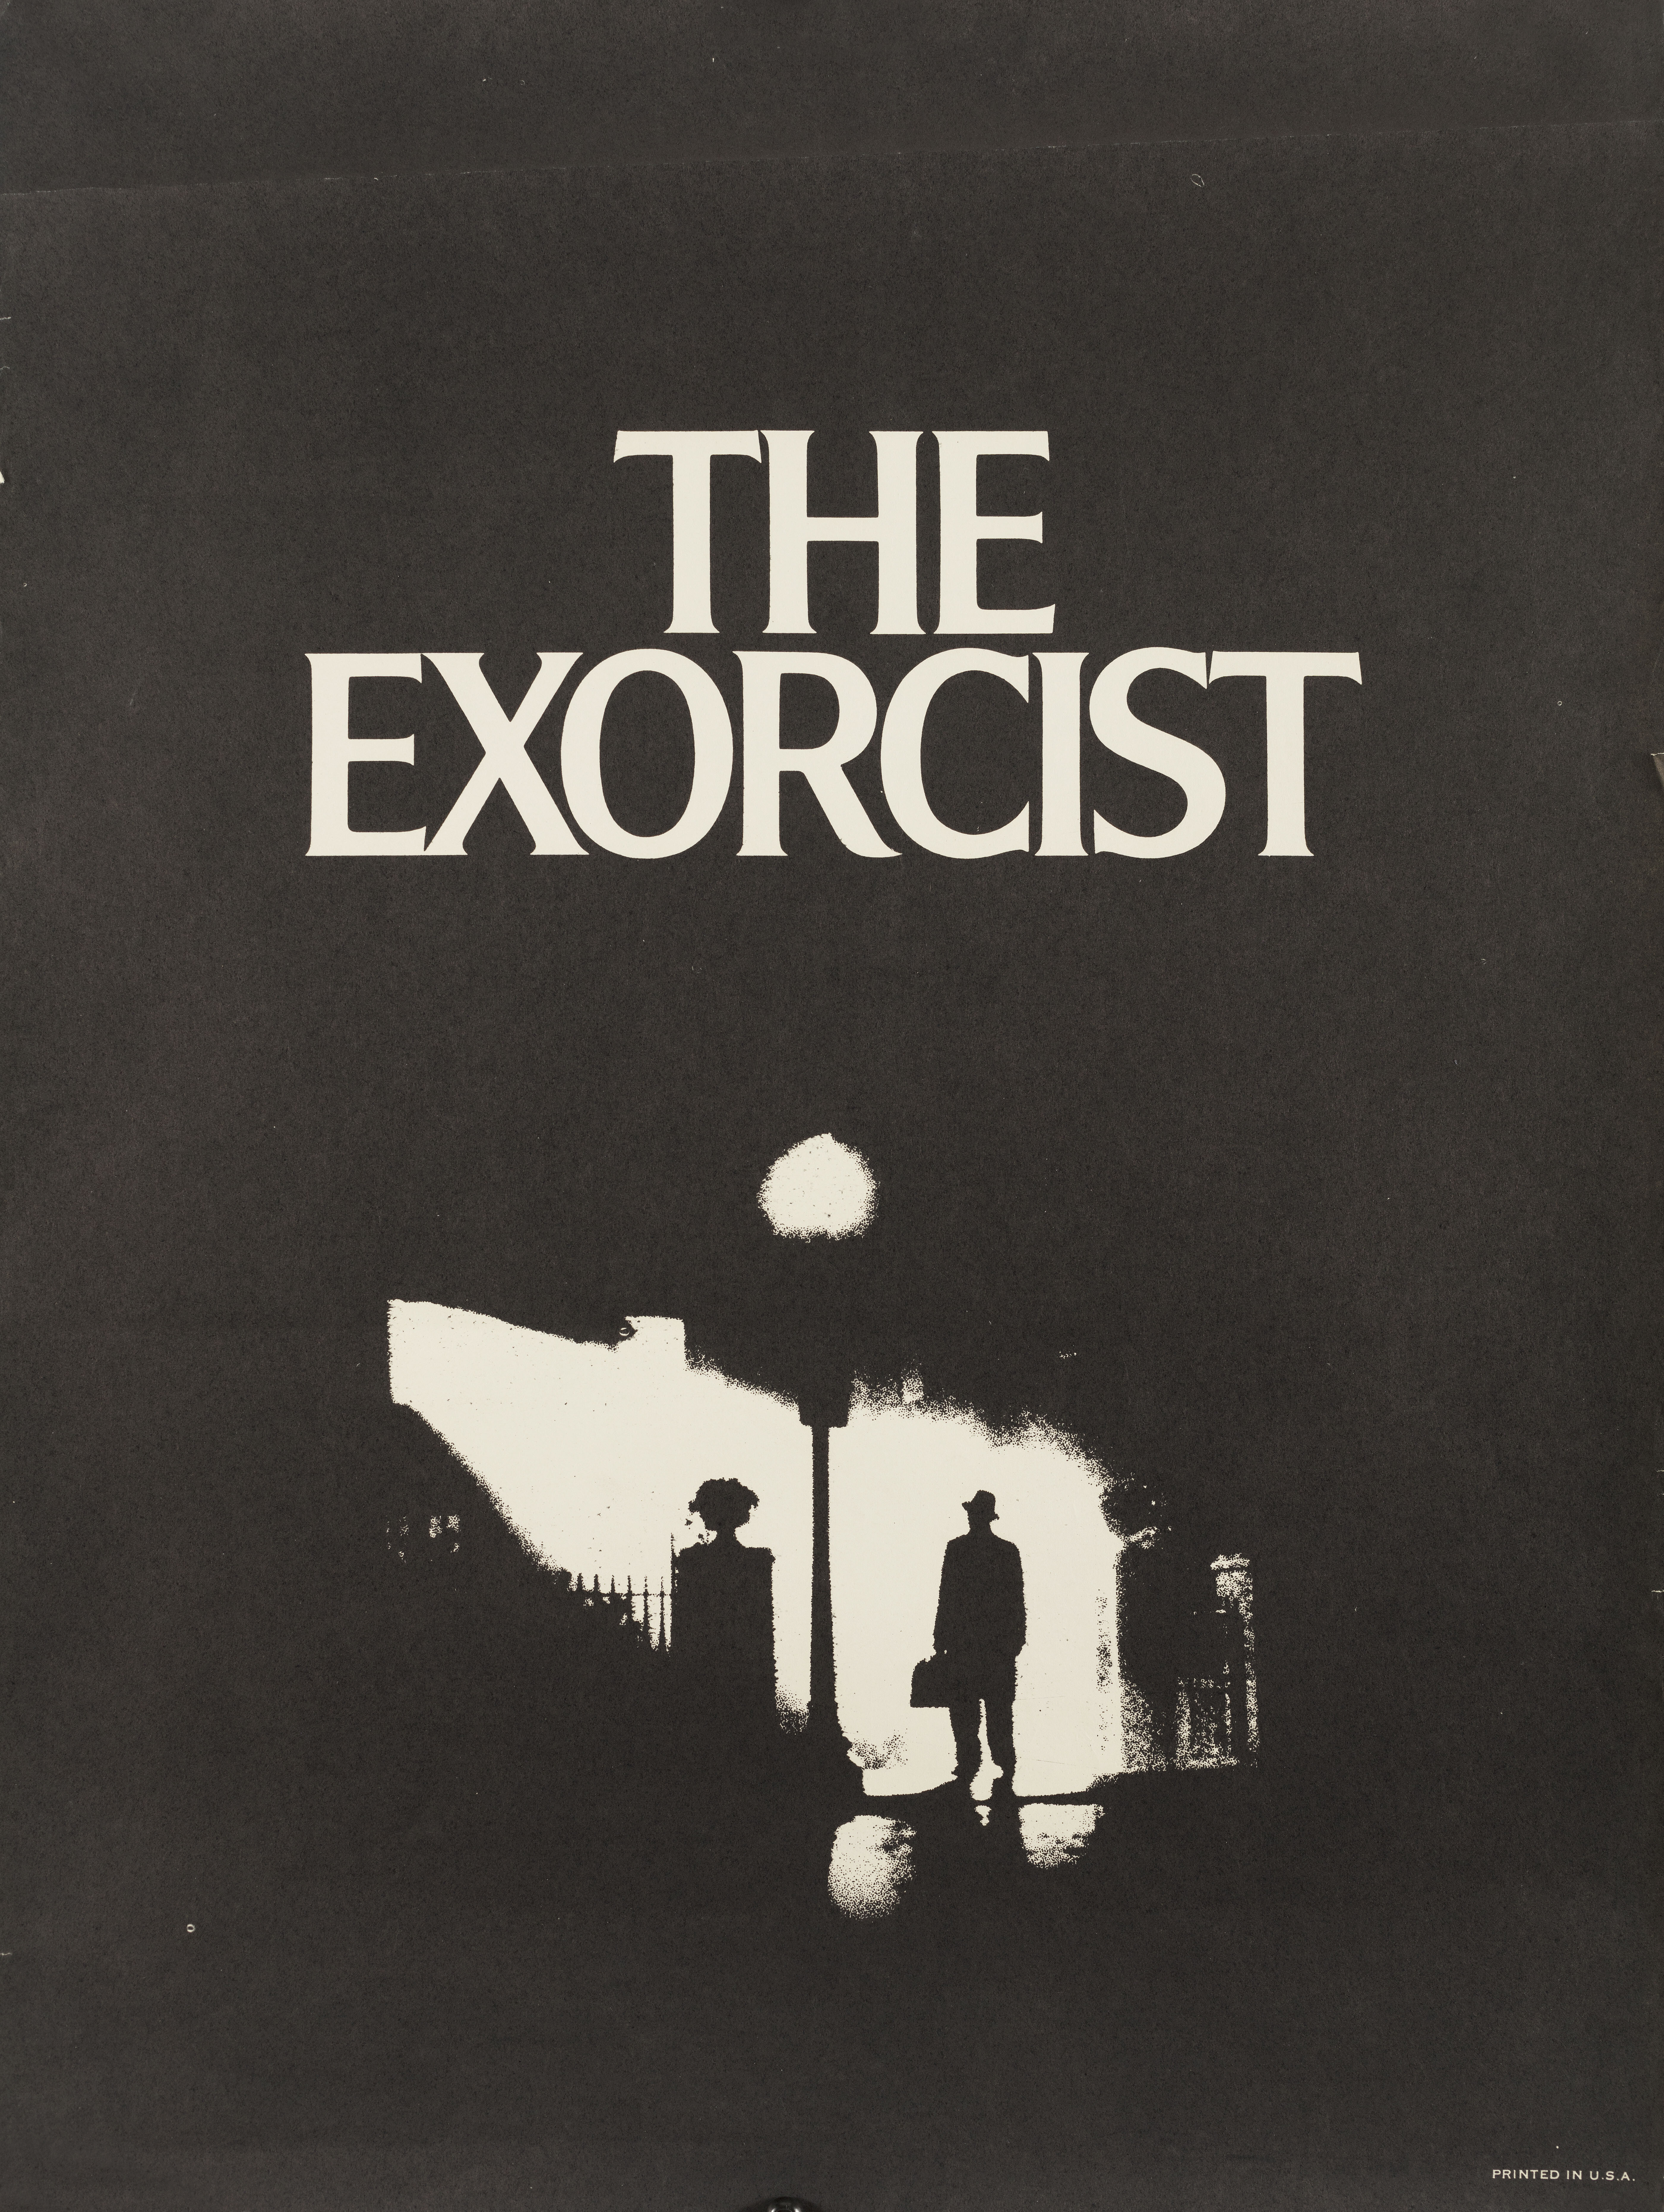 Изгоняющий дьявола (The Exorcist, 1973), режиссёр Уильям Фридкин, минималистичный постер к фильму (США, 1974 год), автор Билл Голд, Дик Найп